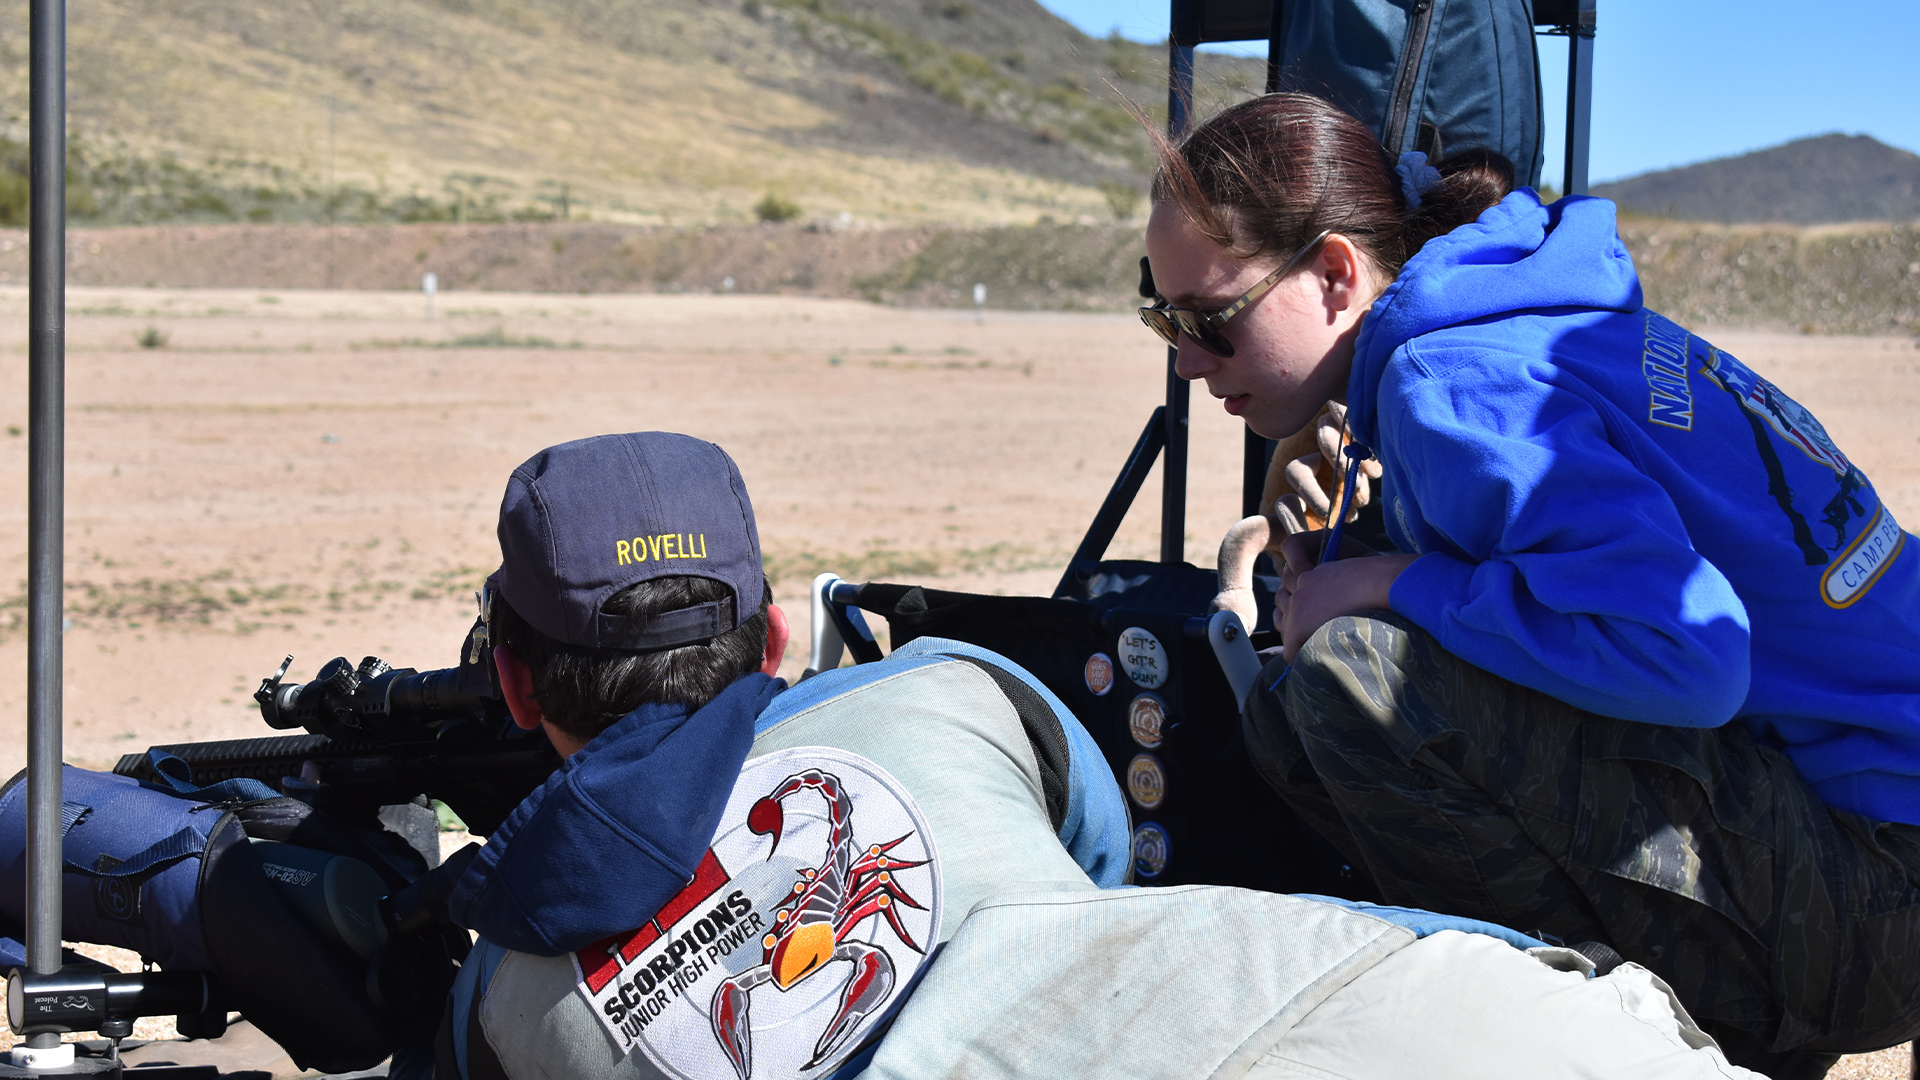 Madison Rovelli coaching a rifle student in Arizona